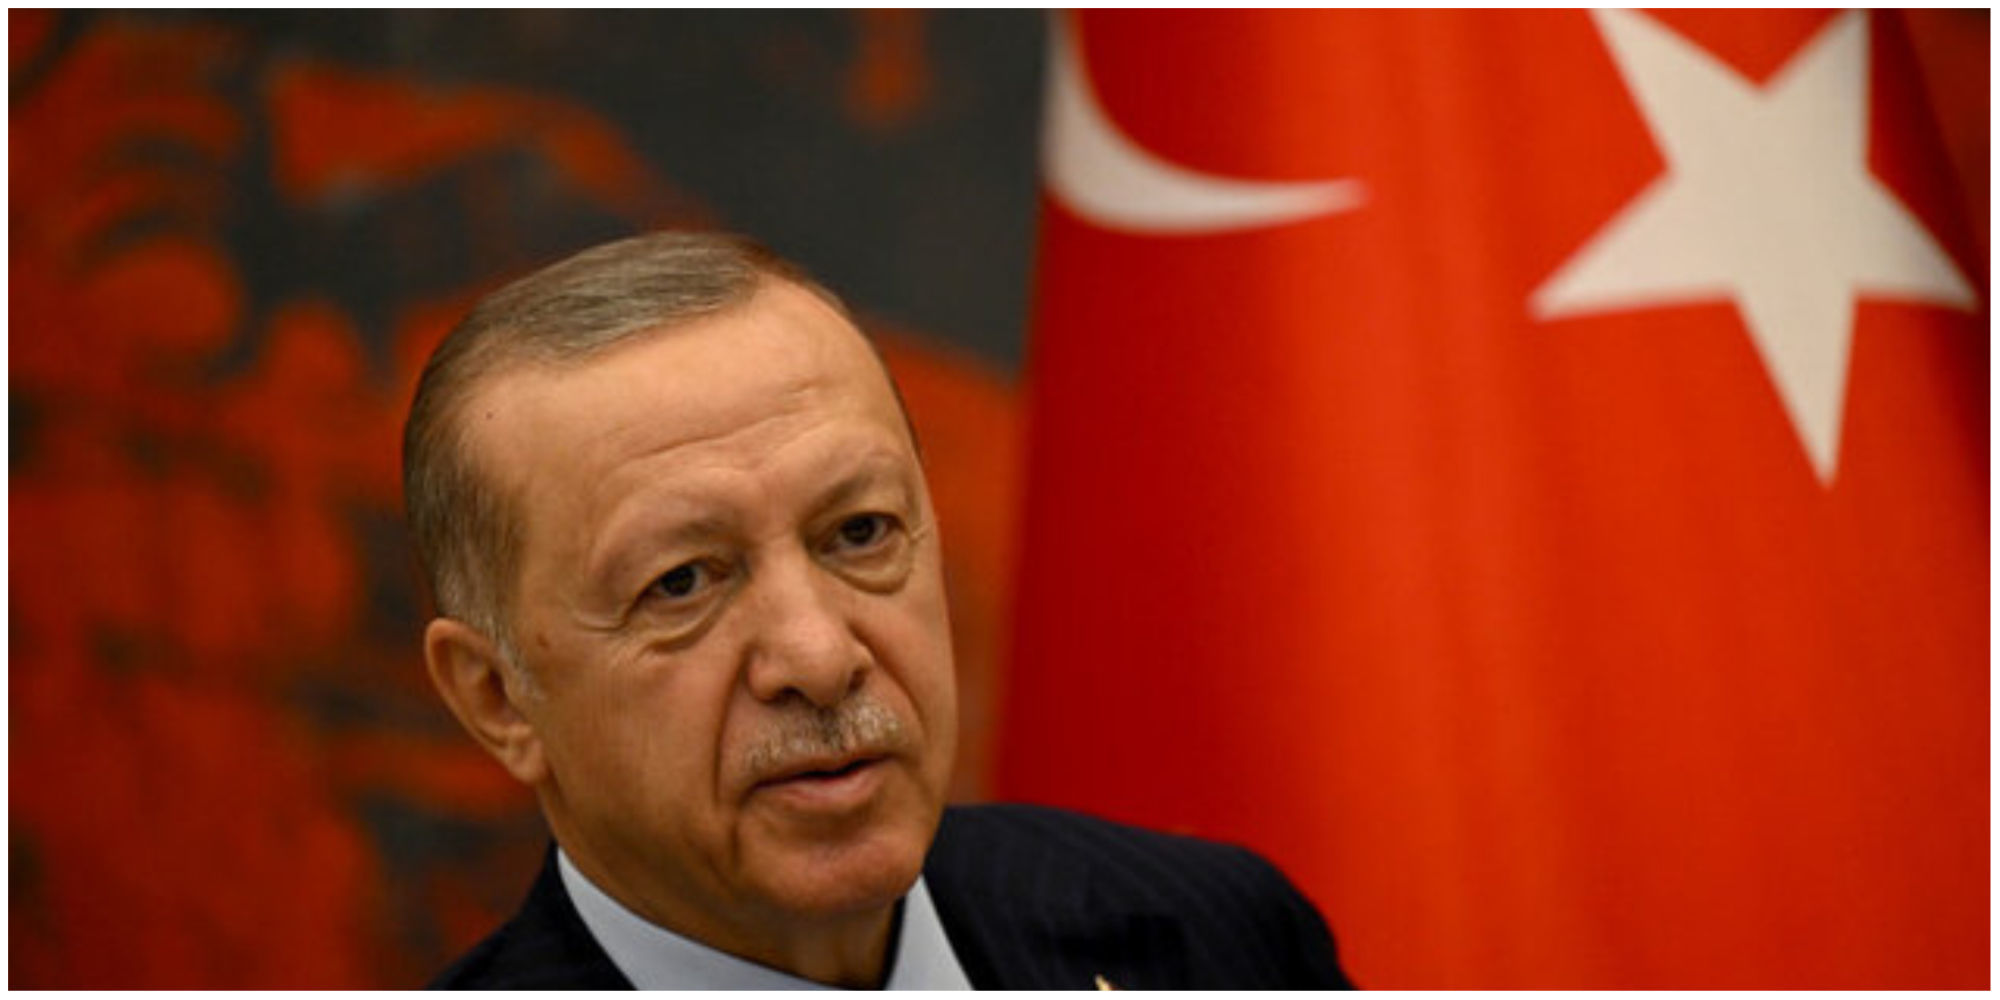 برنامه اصلاحات نامزد مخالفان رئیس جمهوری ترکیه